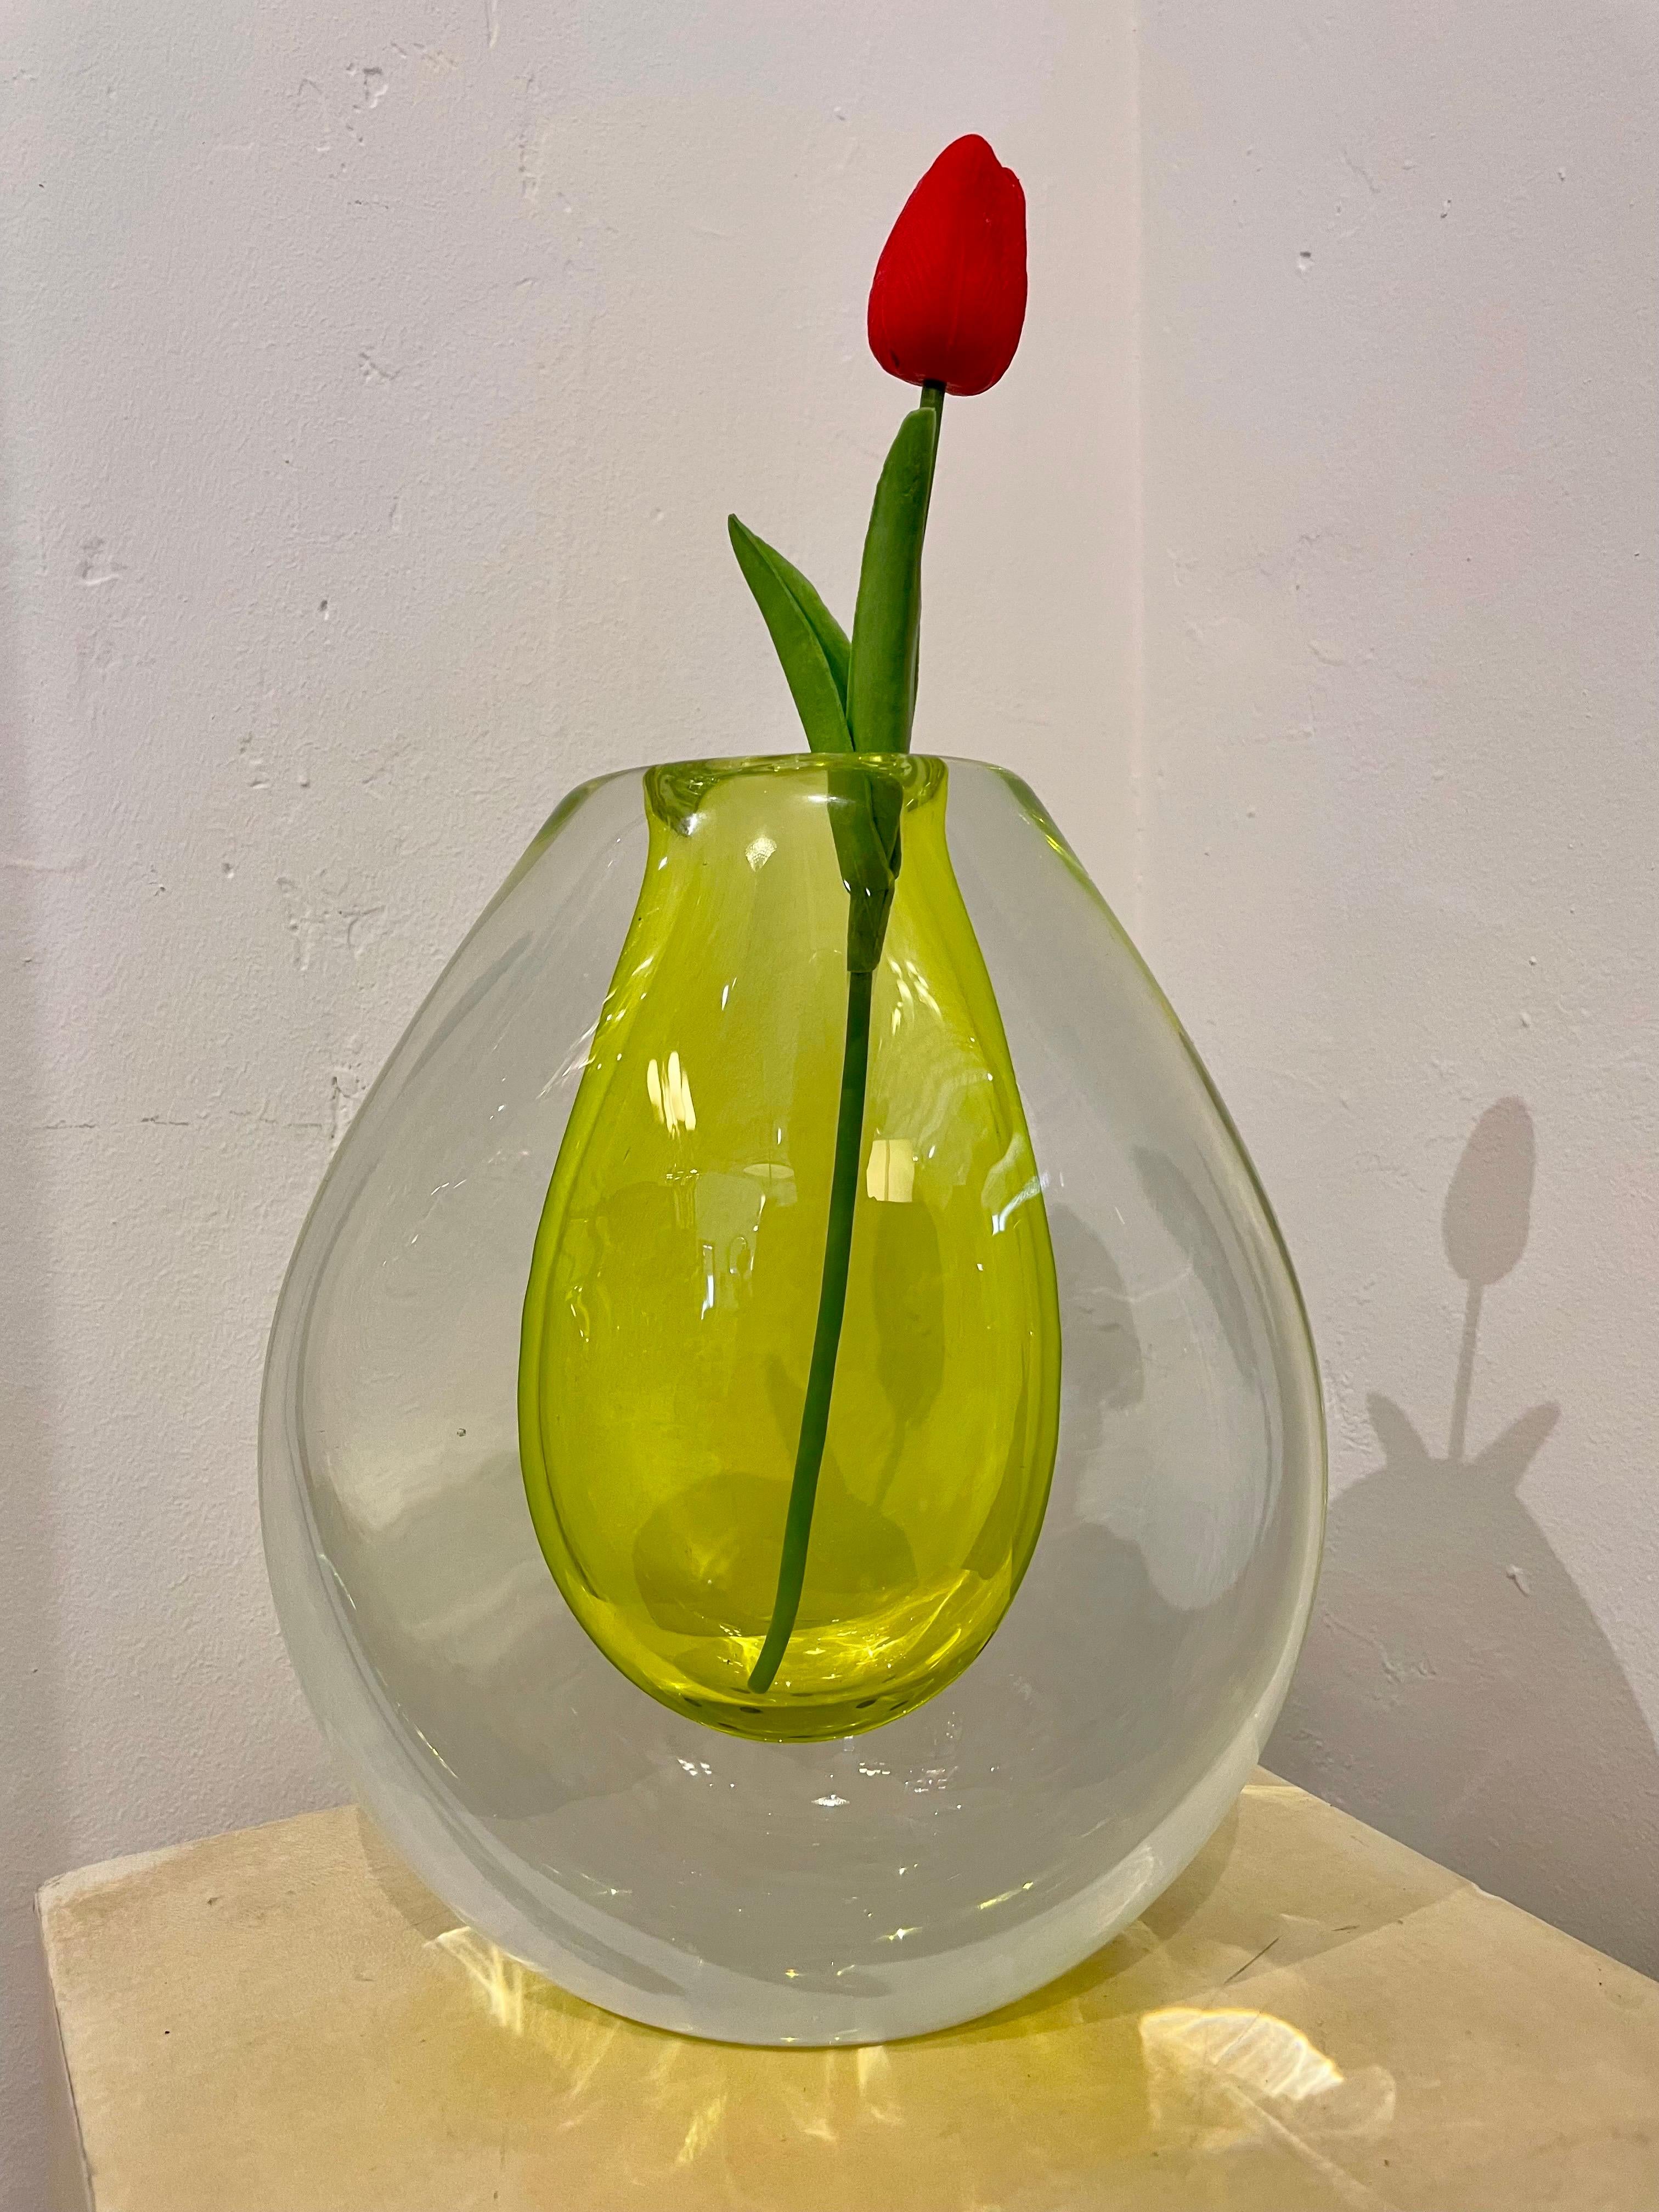 Fabriqué par Seguso pour Poli, cet incroyable verre de Murano de couleur cédrat flottant à l'intérieur d'un entourage en verre clair plus large rend ce grand vase assez lourd. Les couleurs et la beauté sont si vives. Signé en bas.